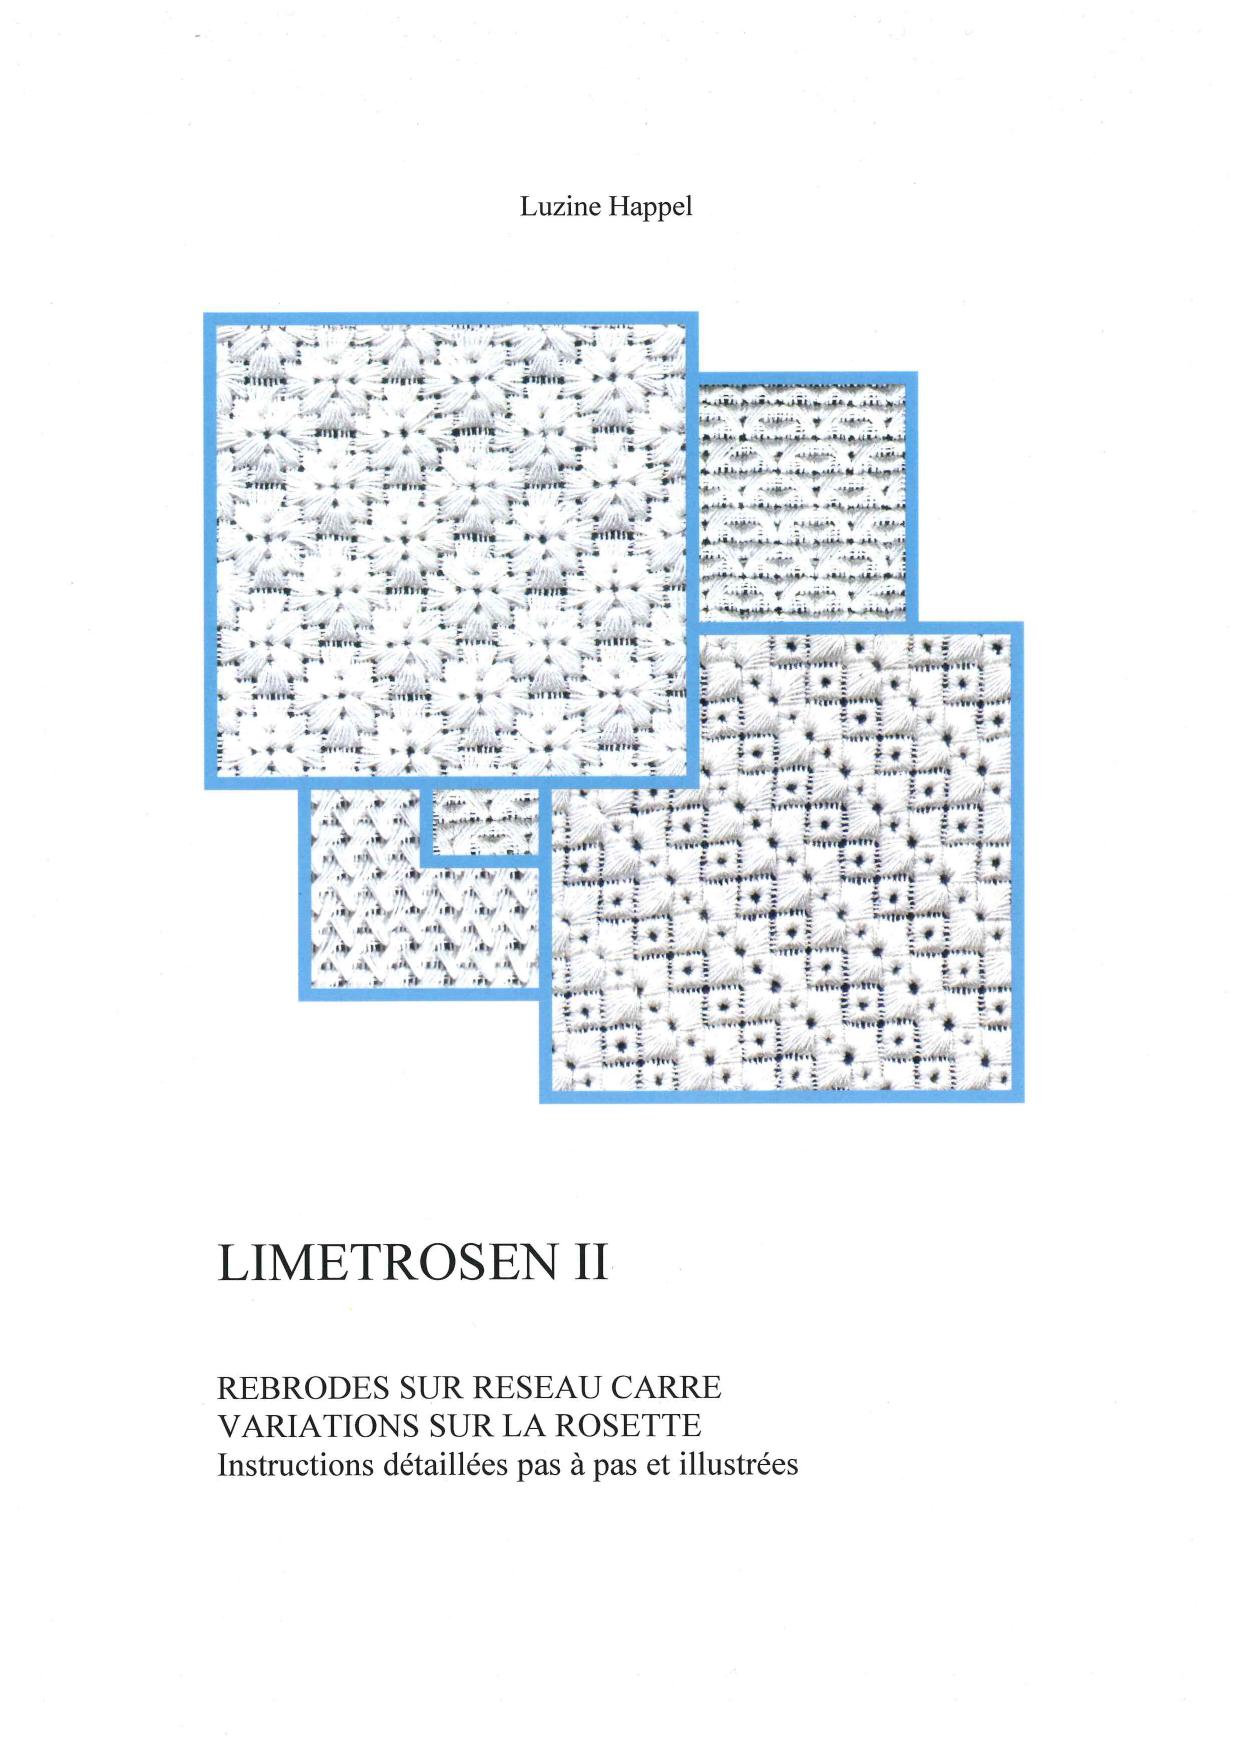 Limetrosen II - French 1 / 7